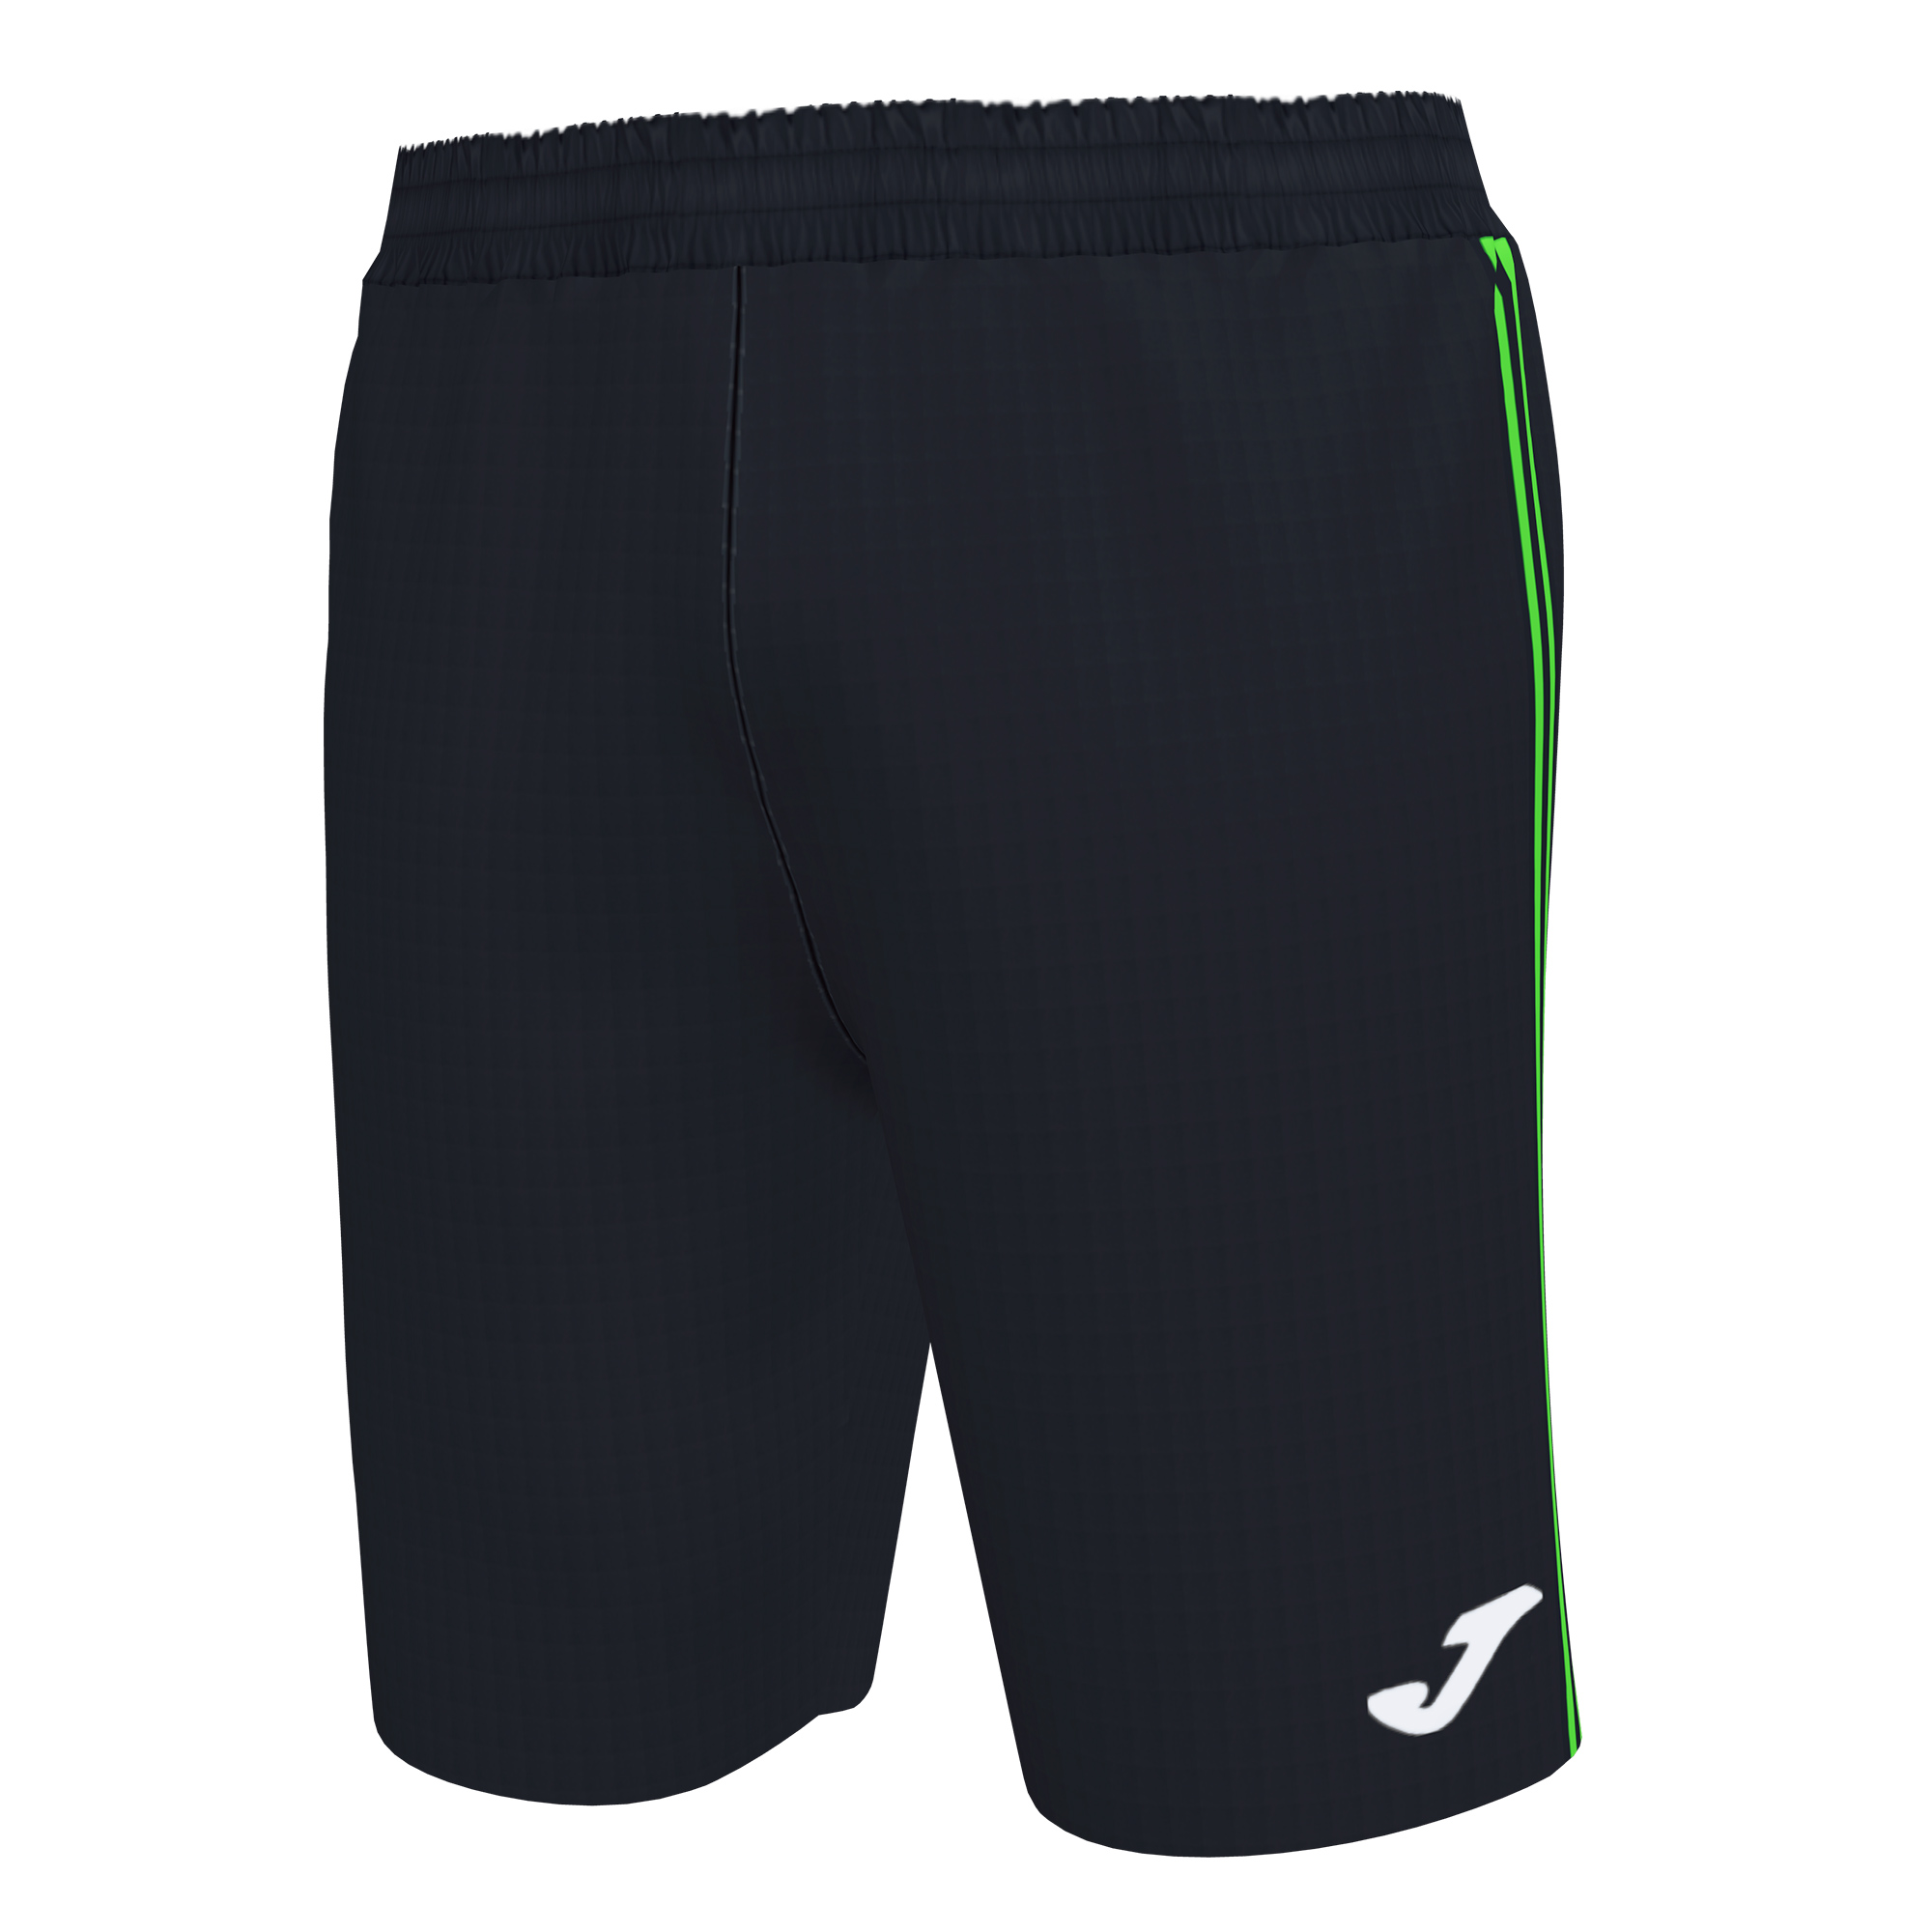 Волейбольные шорты мужские Joma CLASSIC BERMUDA Черный/Светло-зеленый